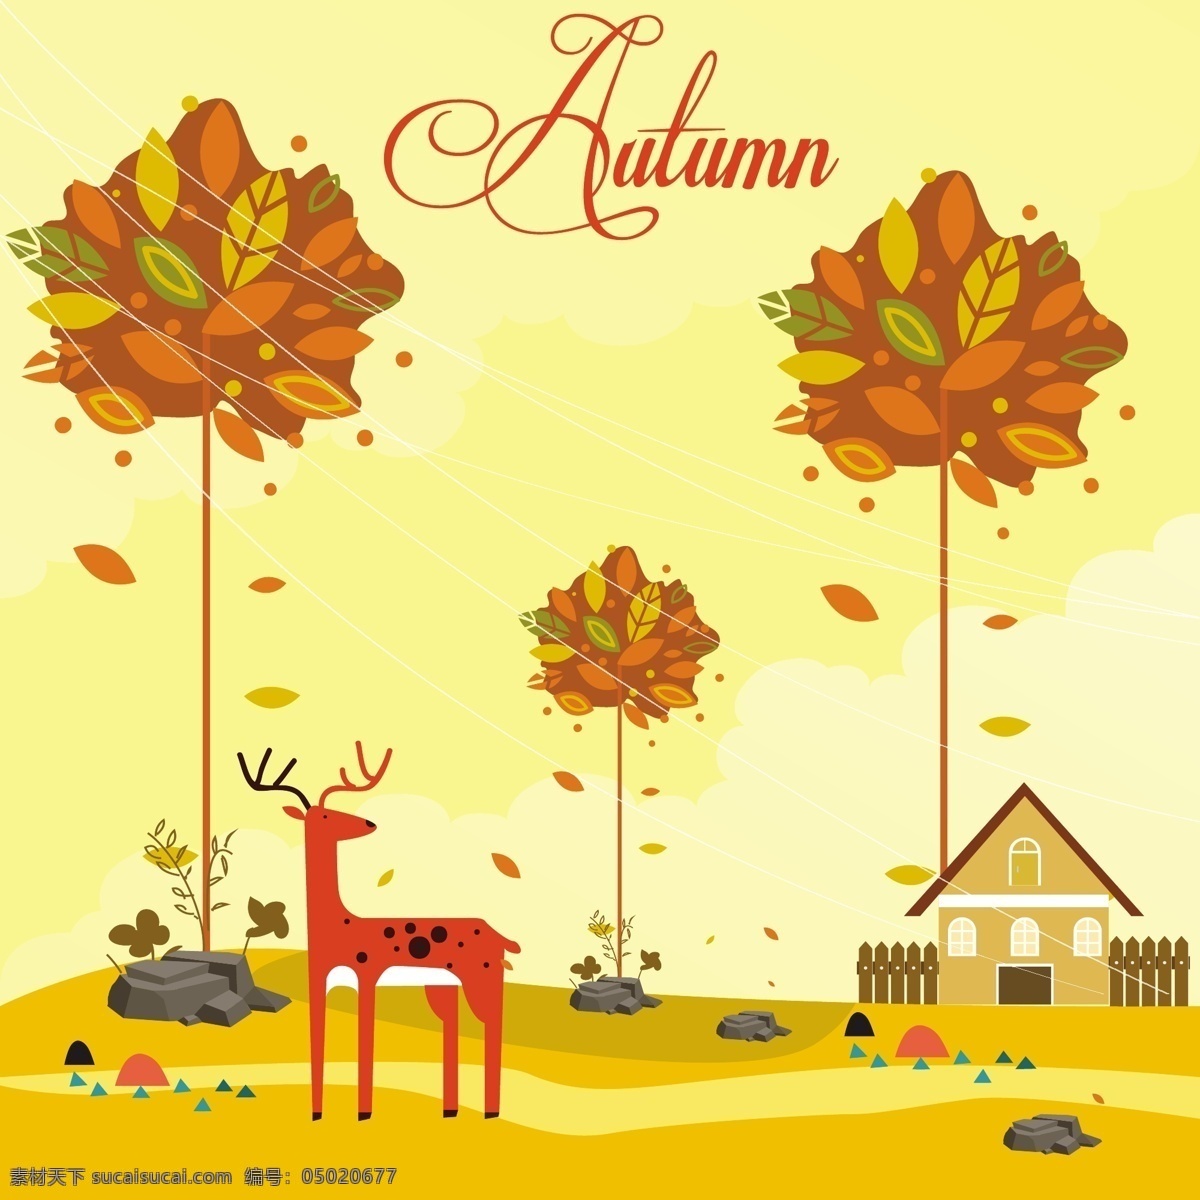 秋天 树叶 风景 插画 矢量 房子 农场 矢量素材 树 黄色叶子 鹿